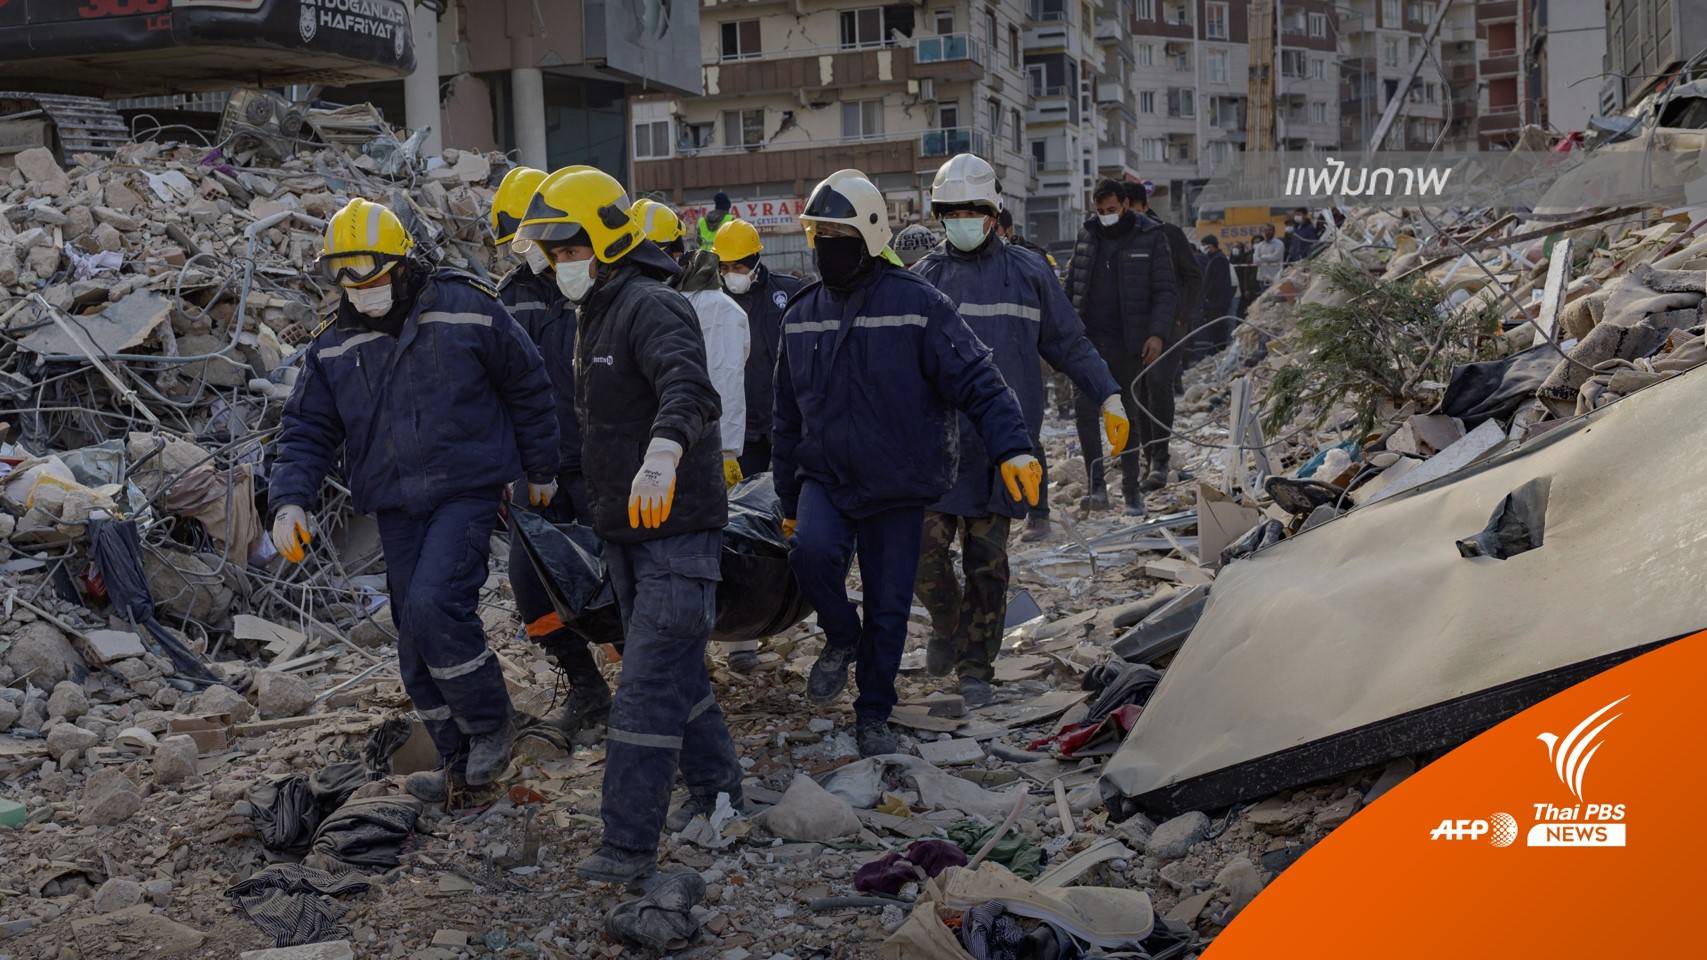 ตุรกียุติภารกิจค้นหากู้ภัยในพื้นที่ส่วนใหญ่ ยกเว้น 2 เมืองเสียหายหนัก